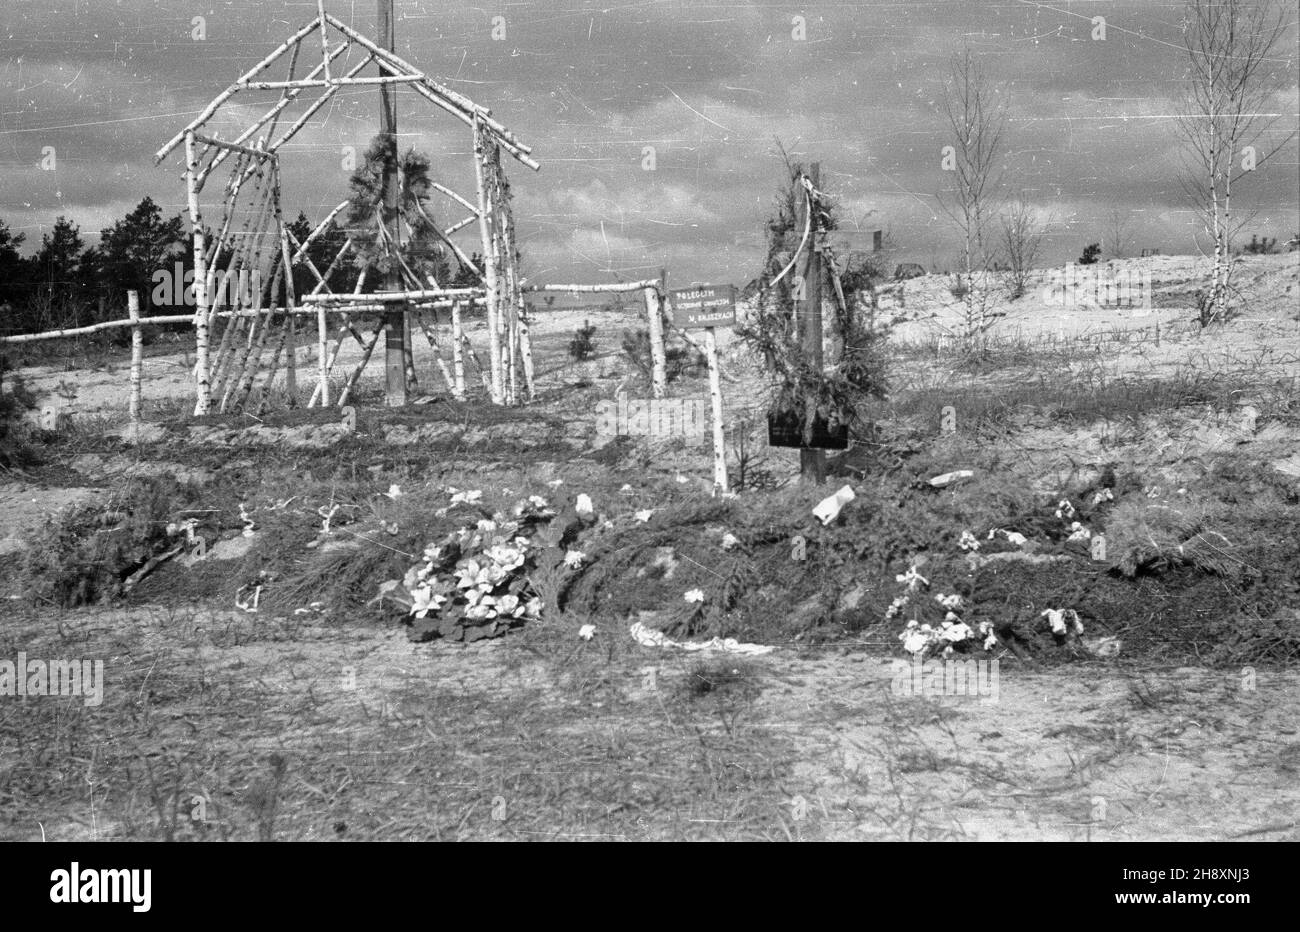 Warszawa, Palmiry, 1946-04-18. W latach 1939-41 na polanie w Palmirach hitlerowcy dokonywali masowych egzekucji Polaków i ¯ydów. Nz. prowizoryczne, drewniane krzy¿e w miejscu egzekucji. ps/ms  PAP/Stanis³aw D¹browiecki      Warsaw-Palmiry, April 18, 1946. In 1939-1941 the Nazis mass-executed Poles and Jews on a field in Palmiry by Warsaw. Pictured: makeshift wooden crosses mark the execution site.  ps/ms  PAP/Stanislaw Dabrowiecki Stock Photo